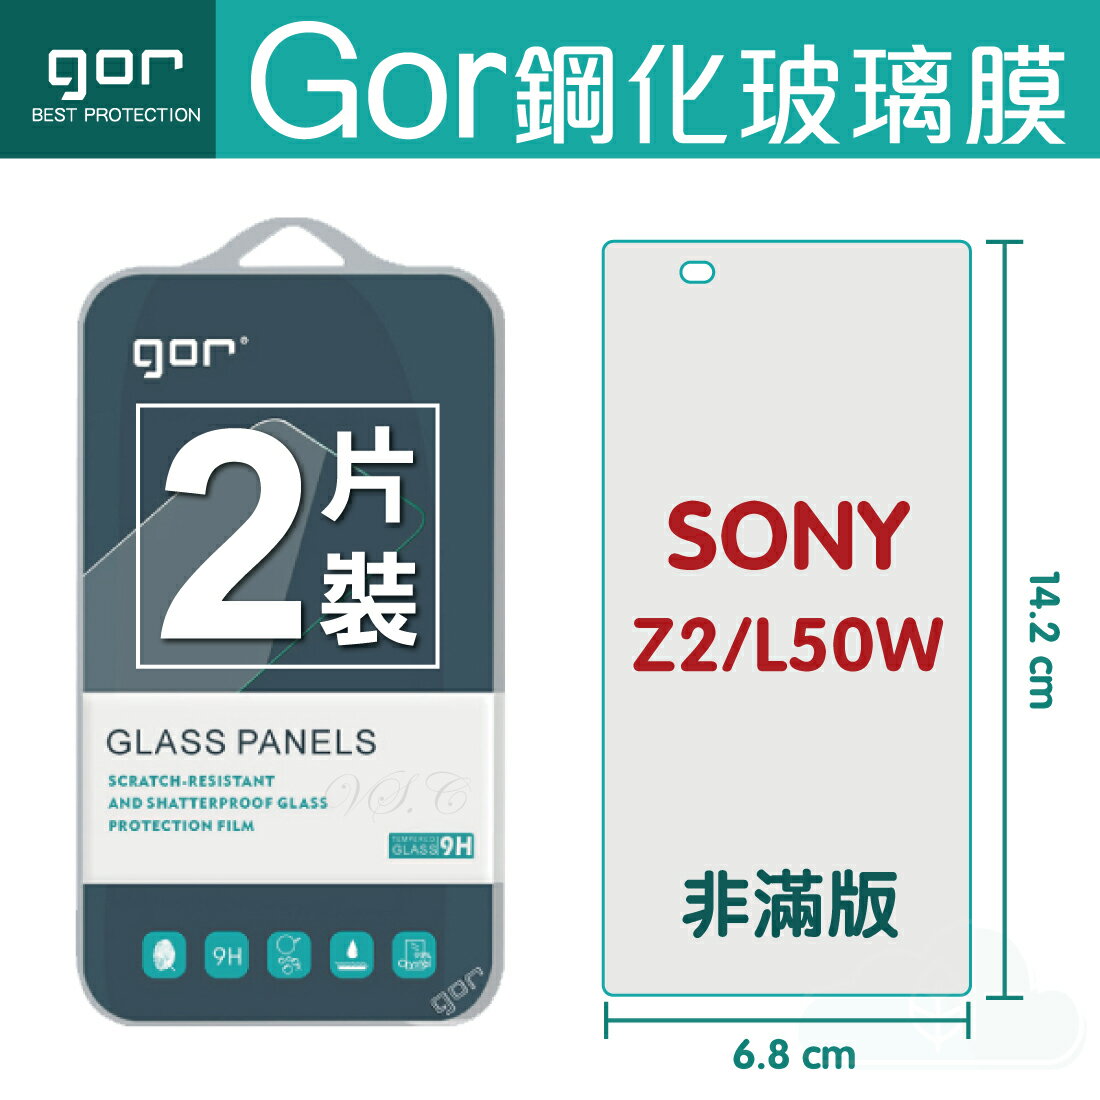 【SONY】GOR 9H Xperia Z2 (L50W) 鋼化 玻璃 保護貼 全透明非滿版 兩片裝【APP下單最高22%回饋】